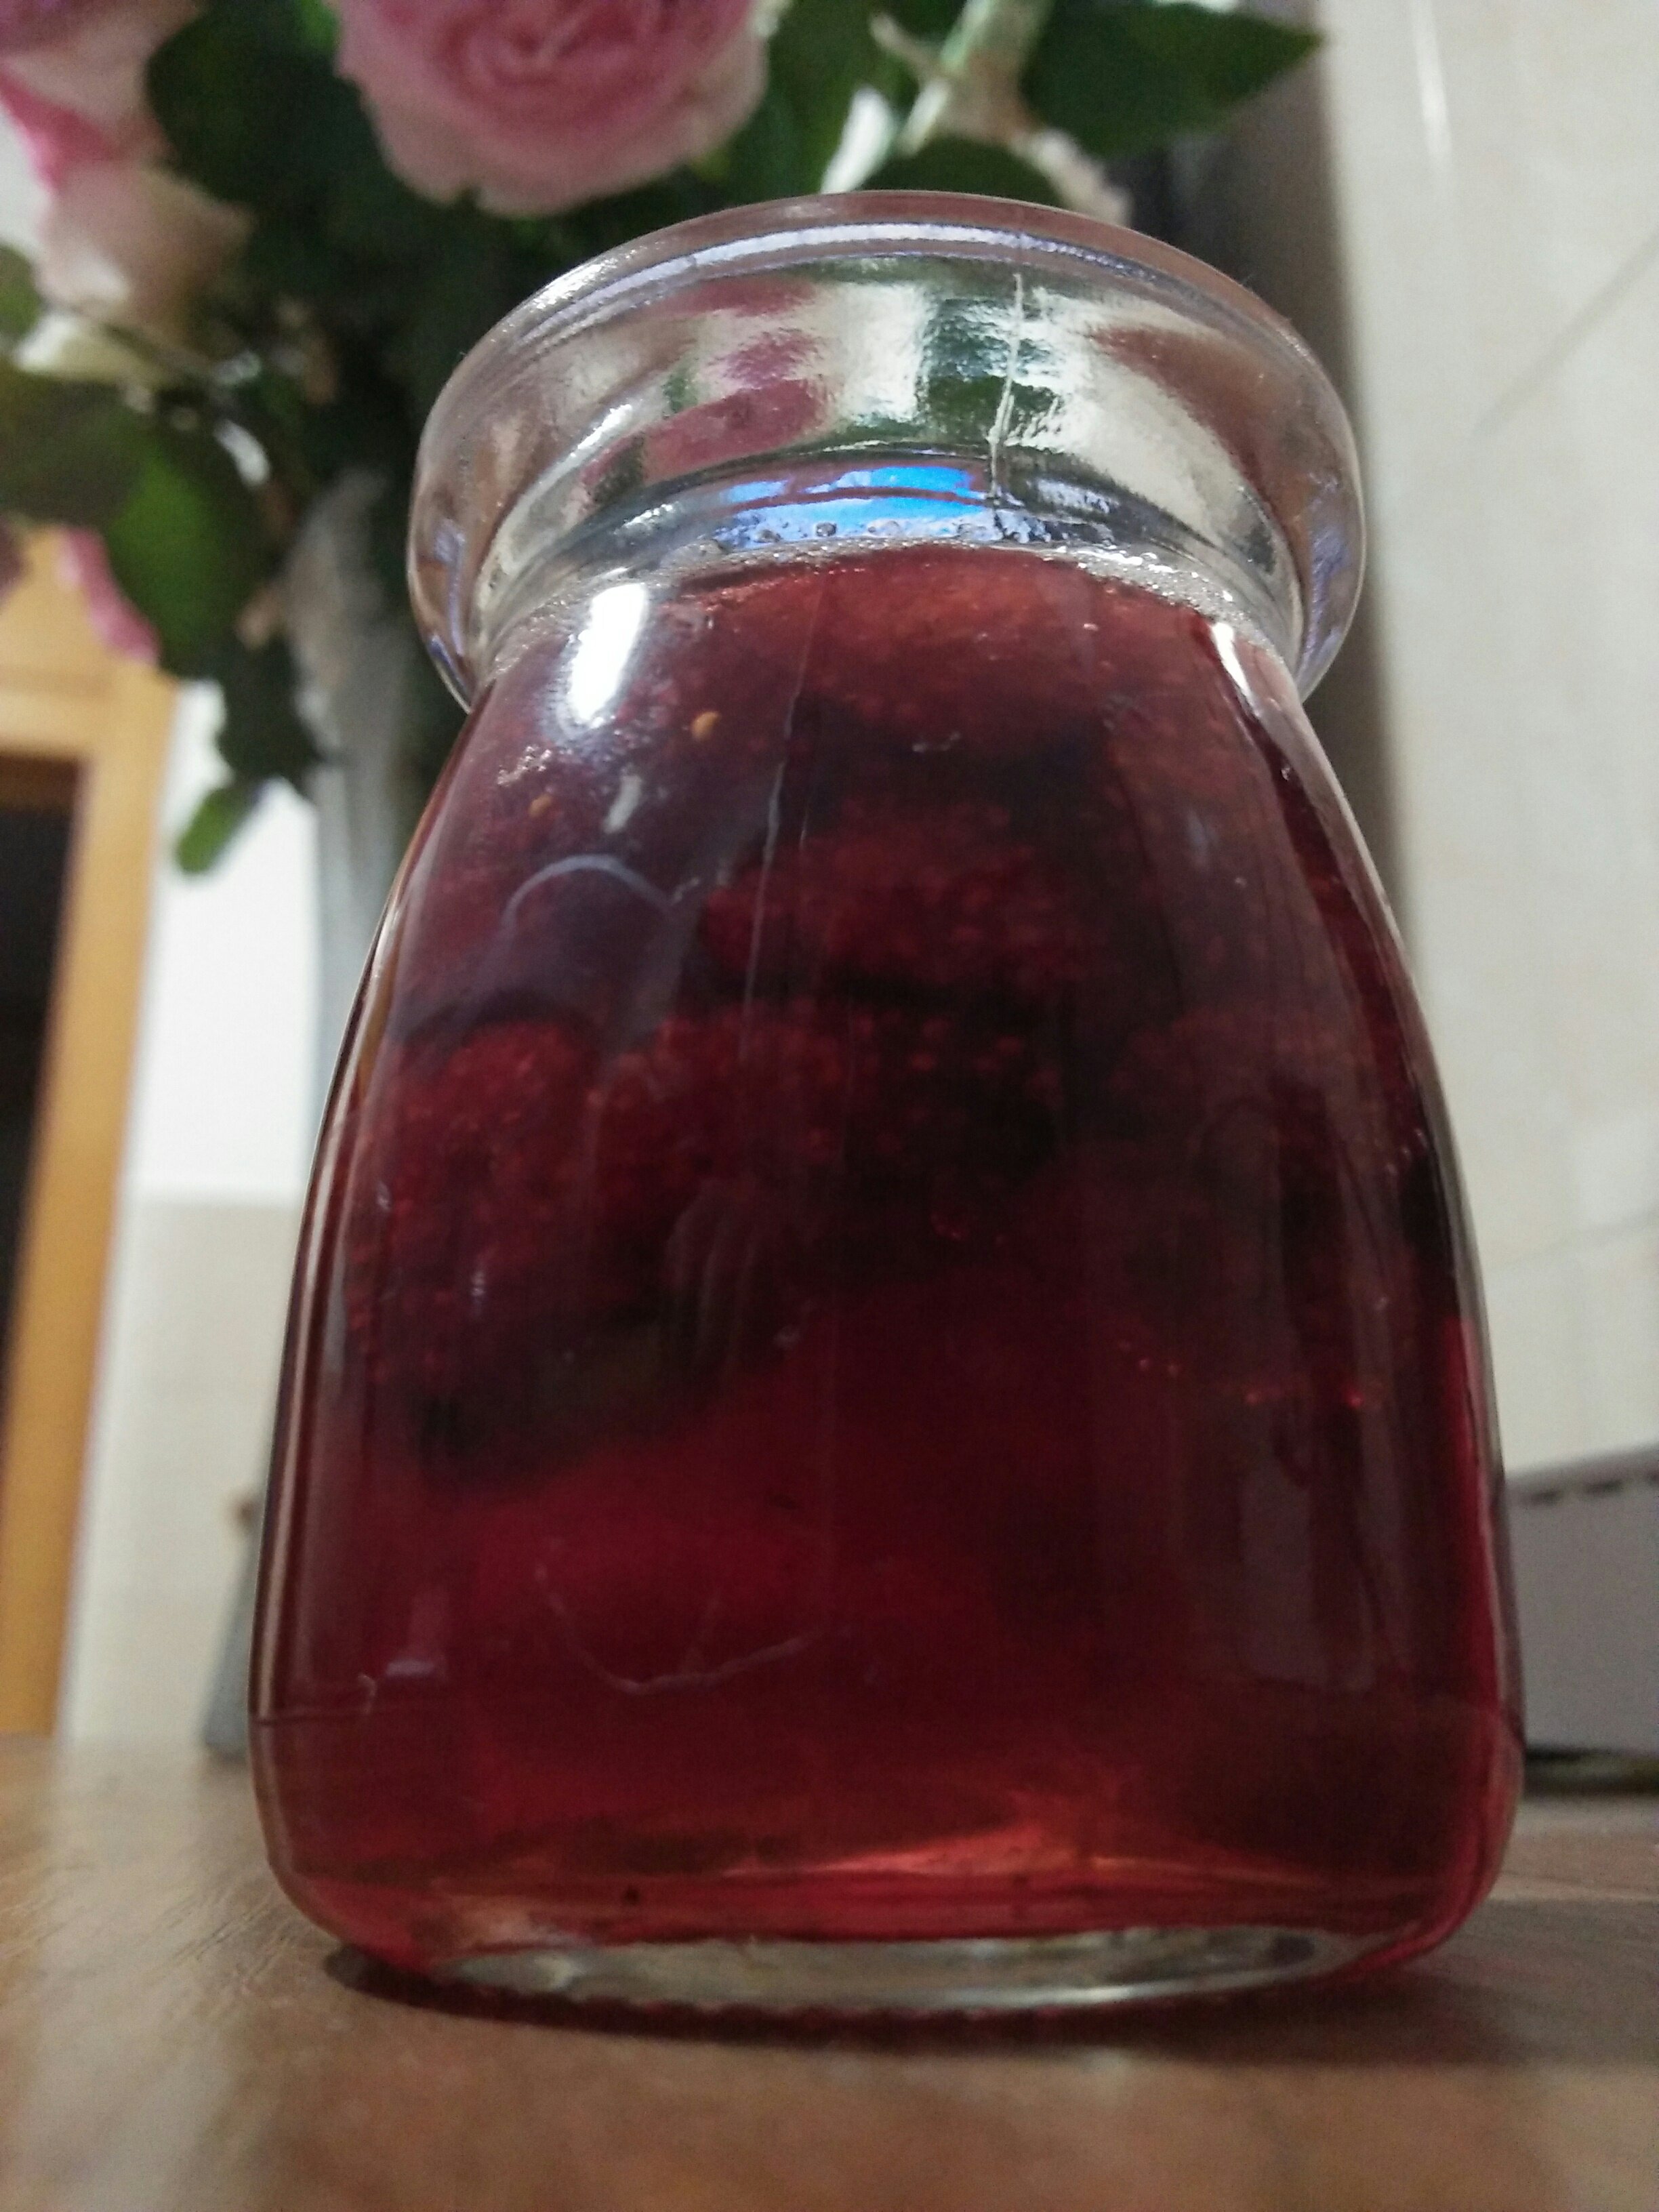 糖水树莓